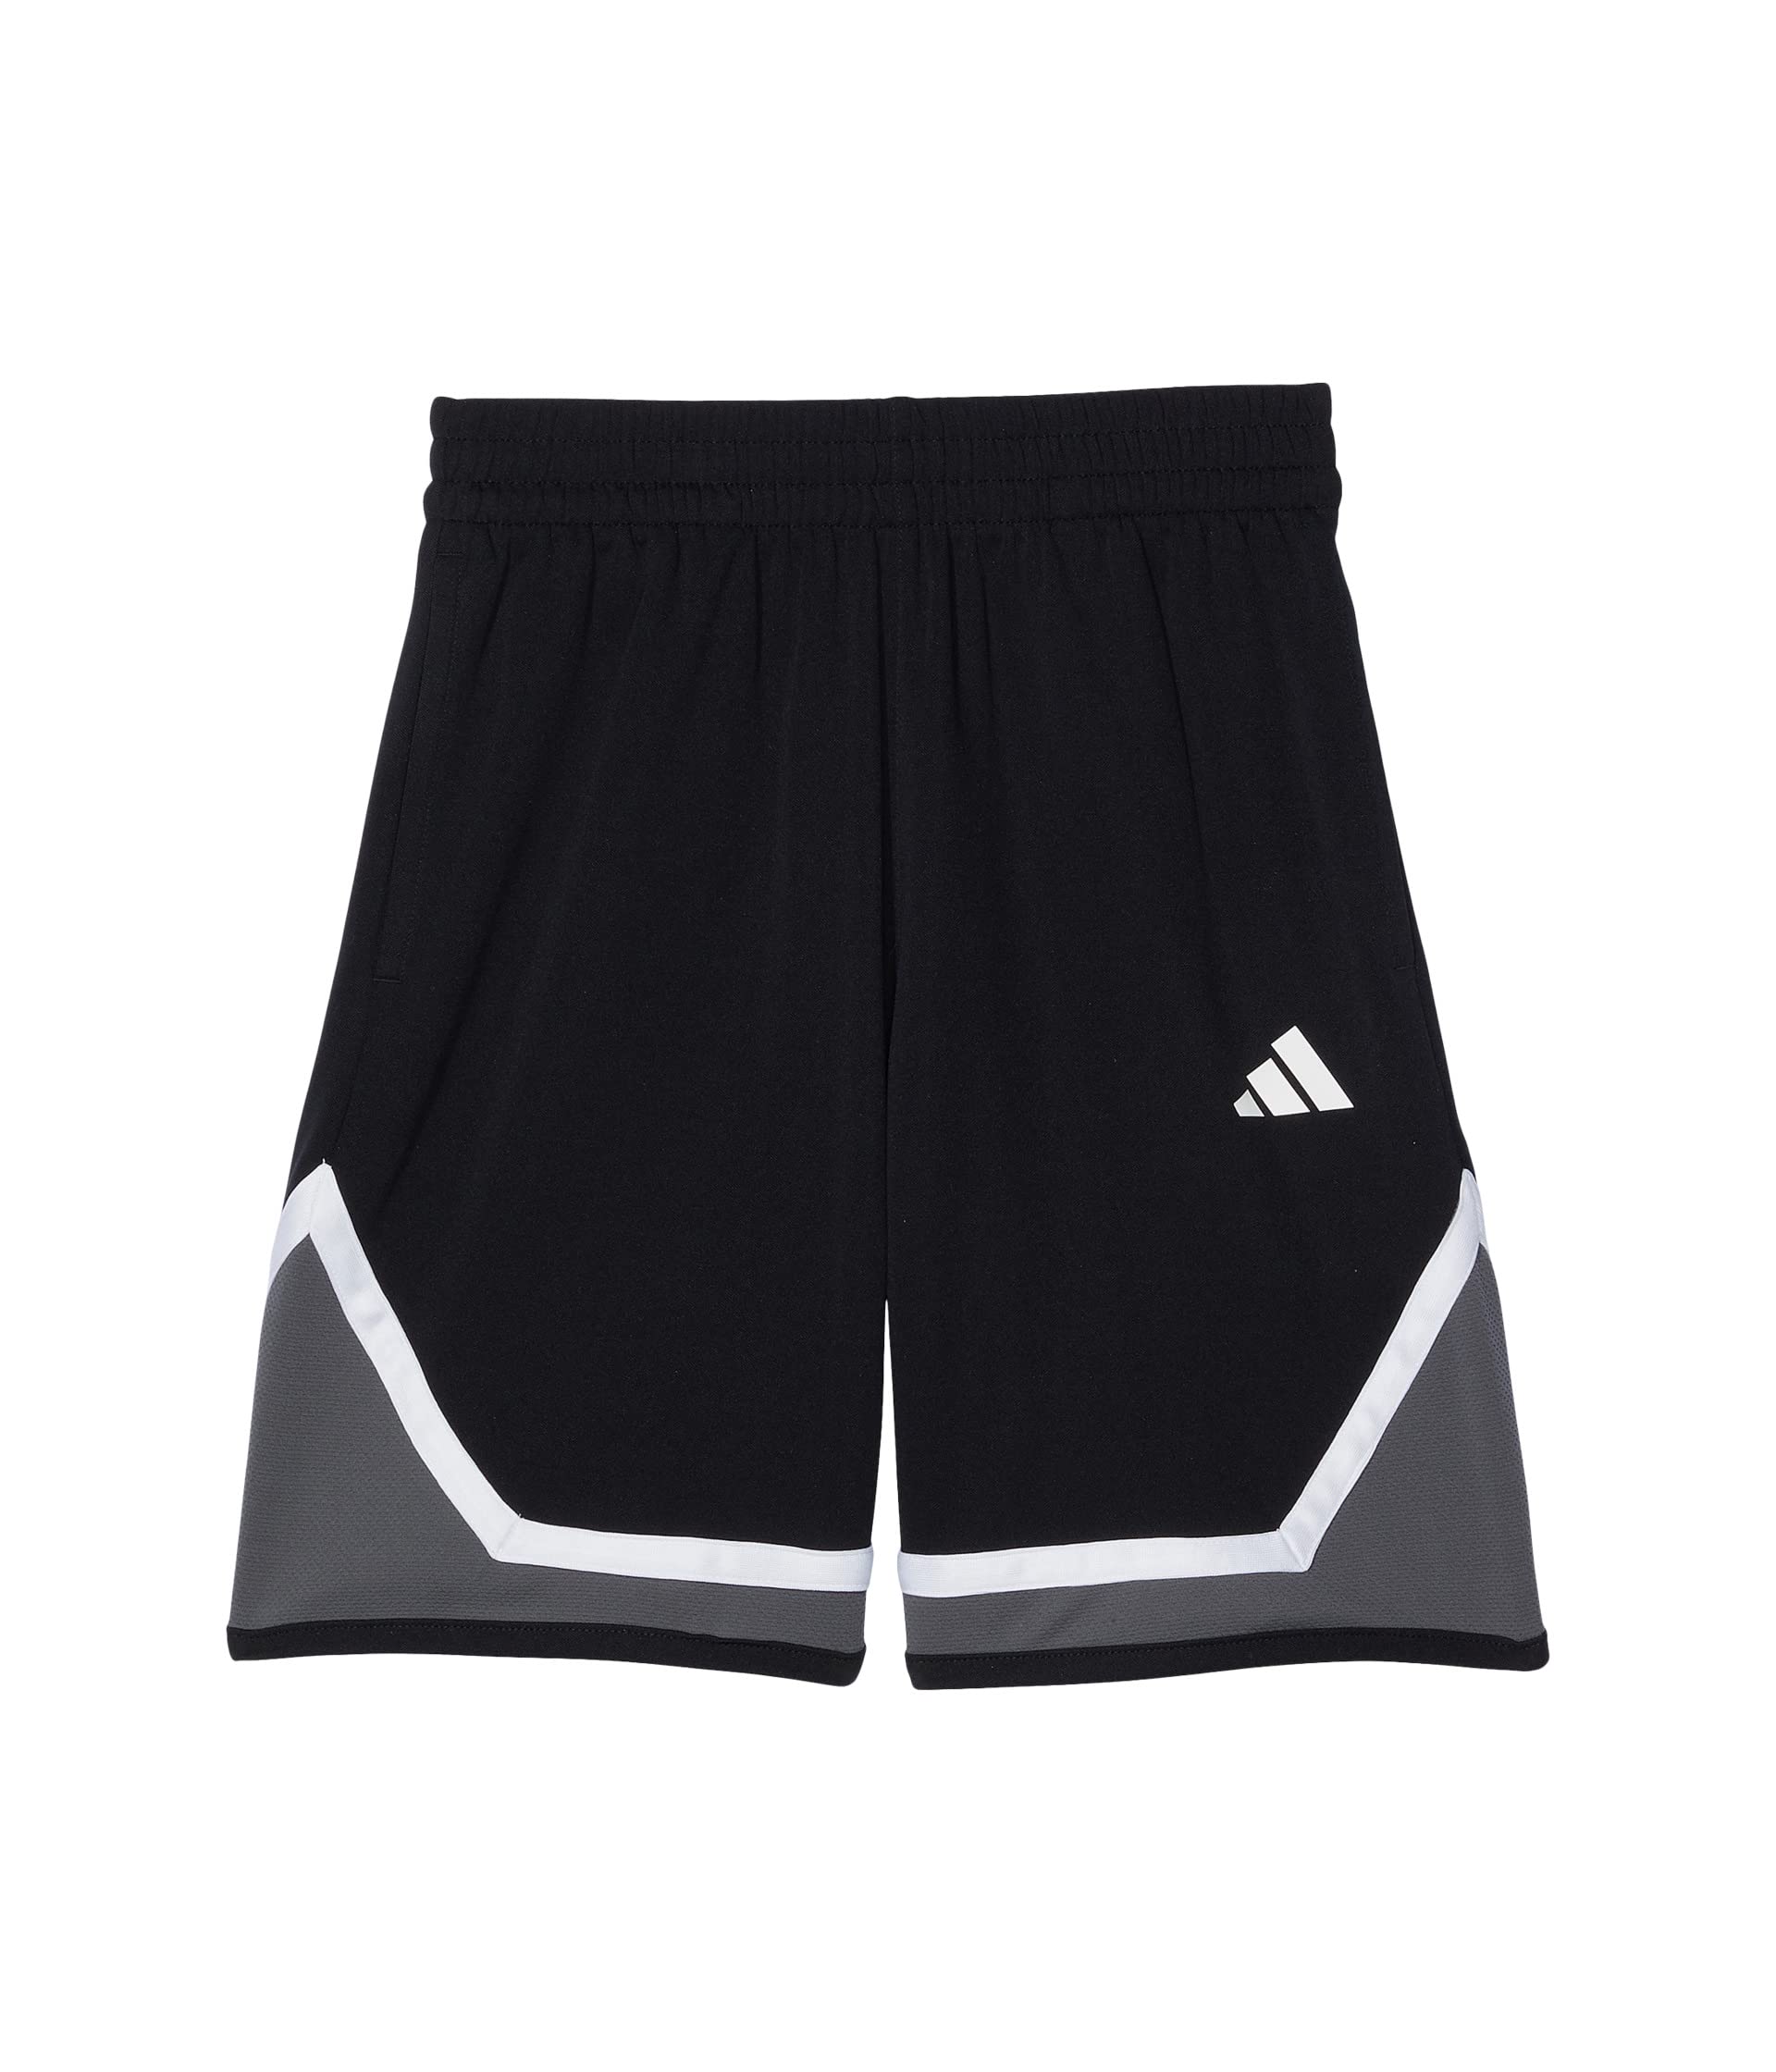 Баскетбольные шорты Legends Pro (для больших детей) Adidas